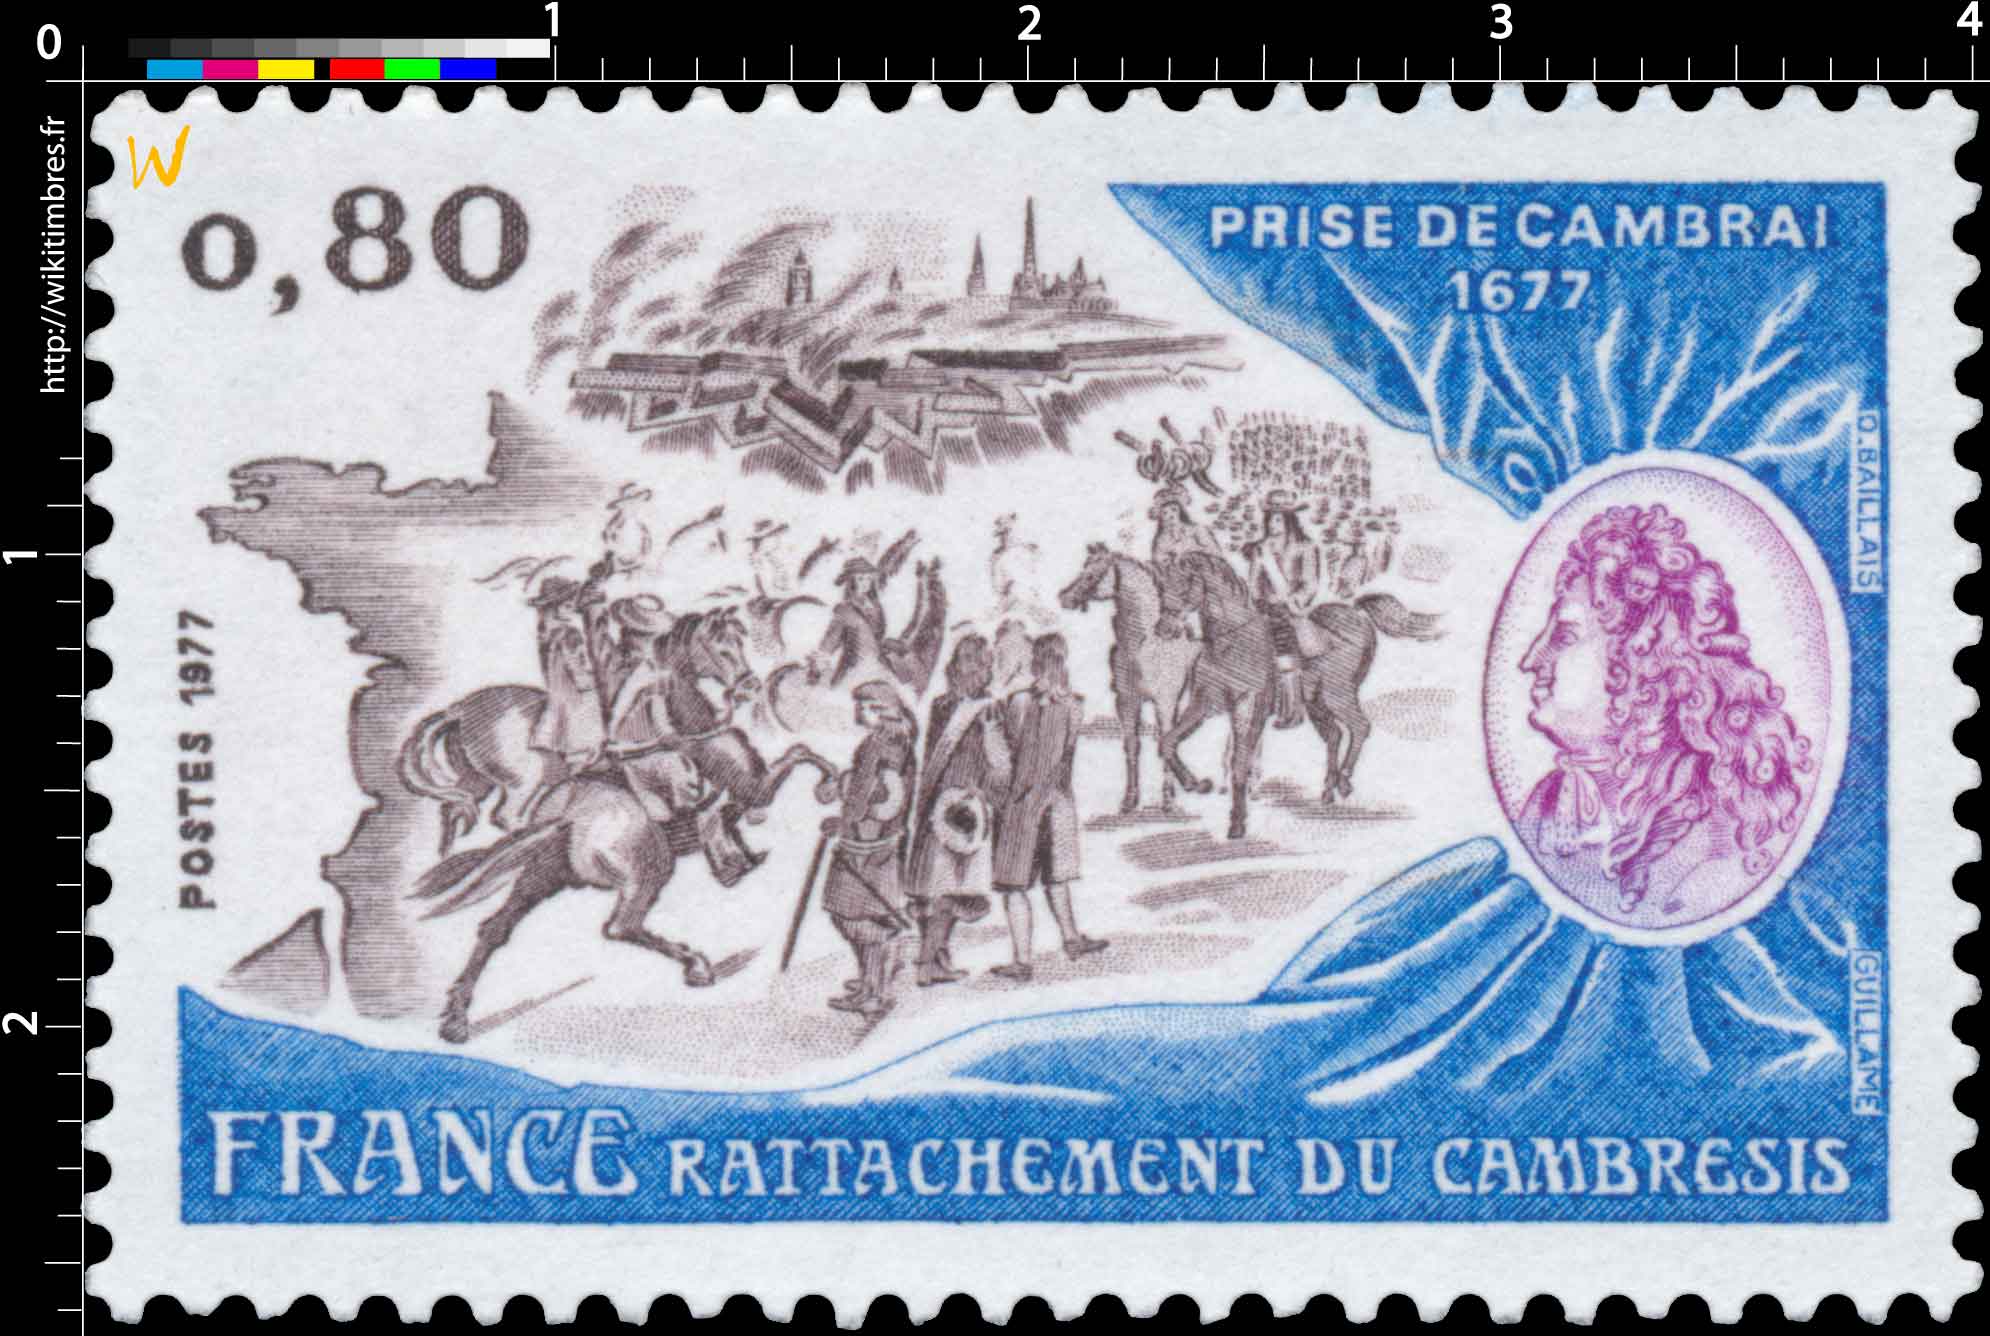 1977 RATTACHEMENT DU CAMBRÉSIS PRISE DE CAMBRAI 1677